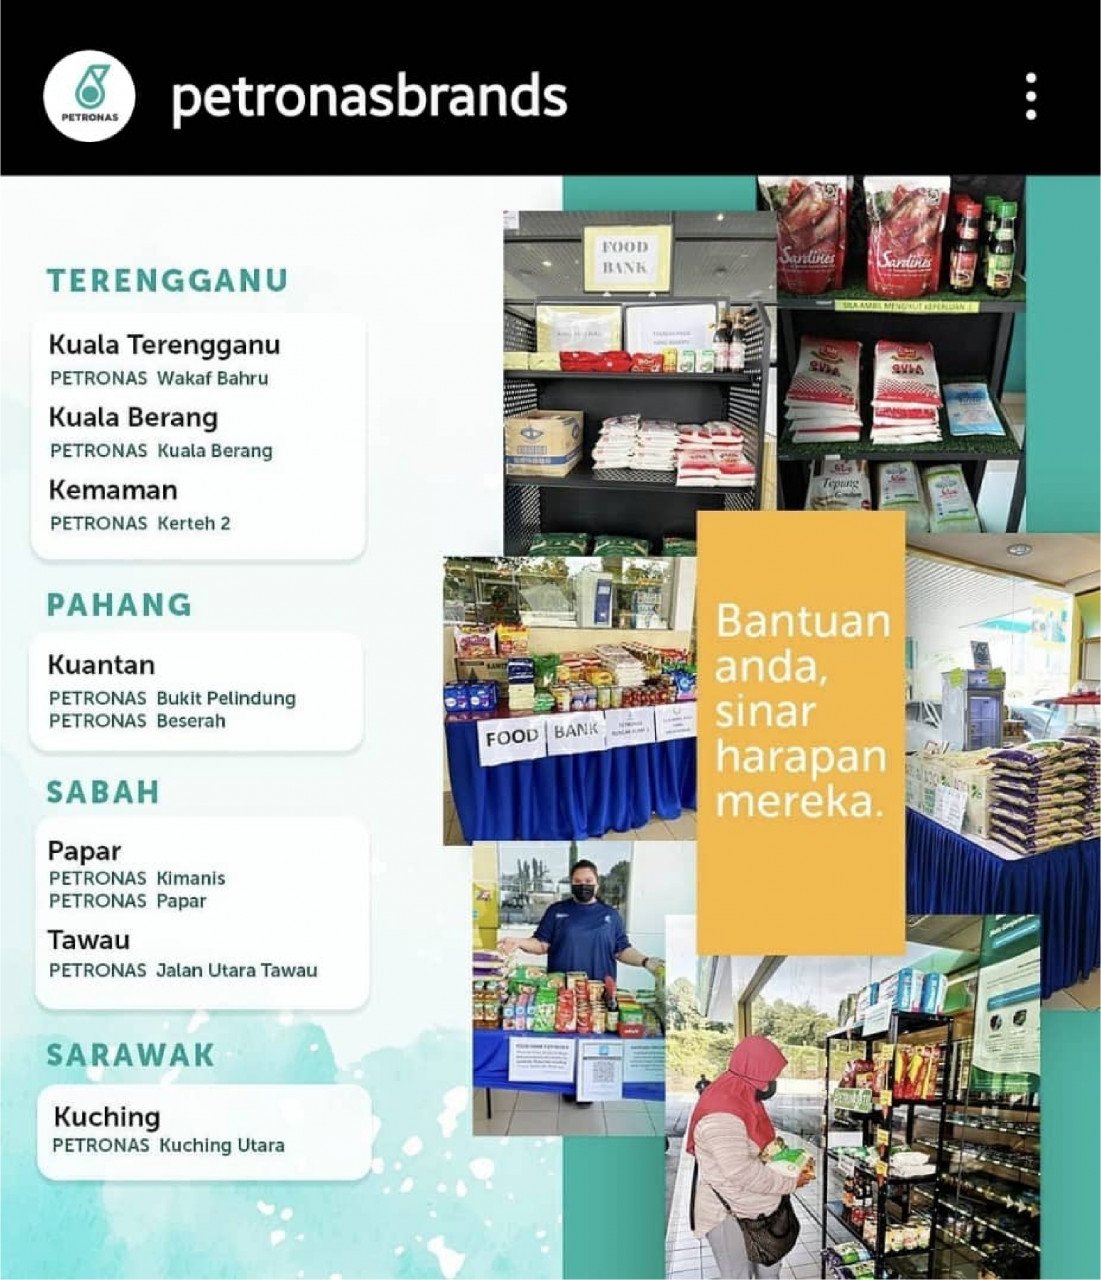 Petronas turut menyahut seruan menghulurkan bantuan kepada mereka yang memerlukan.